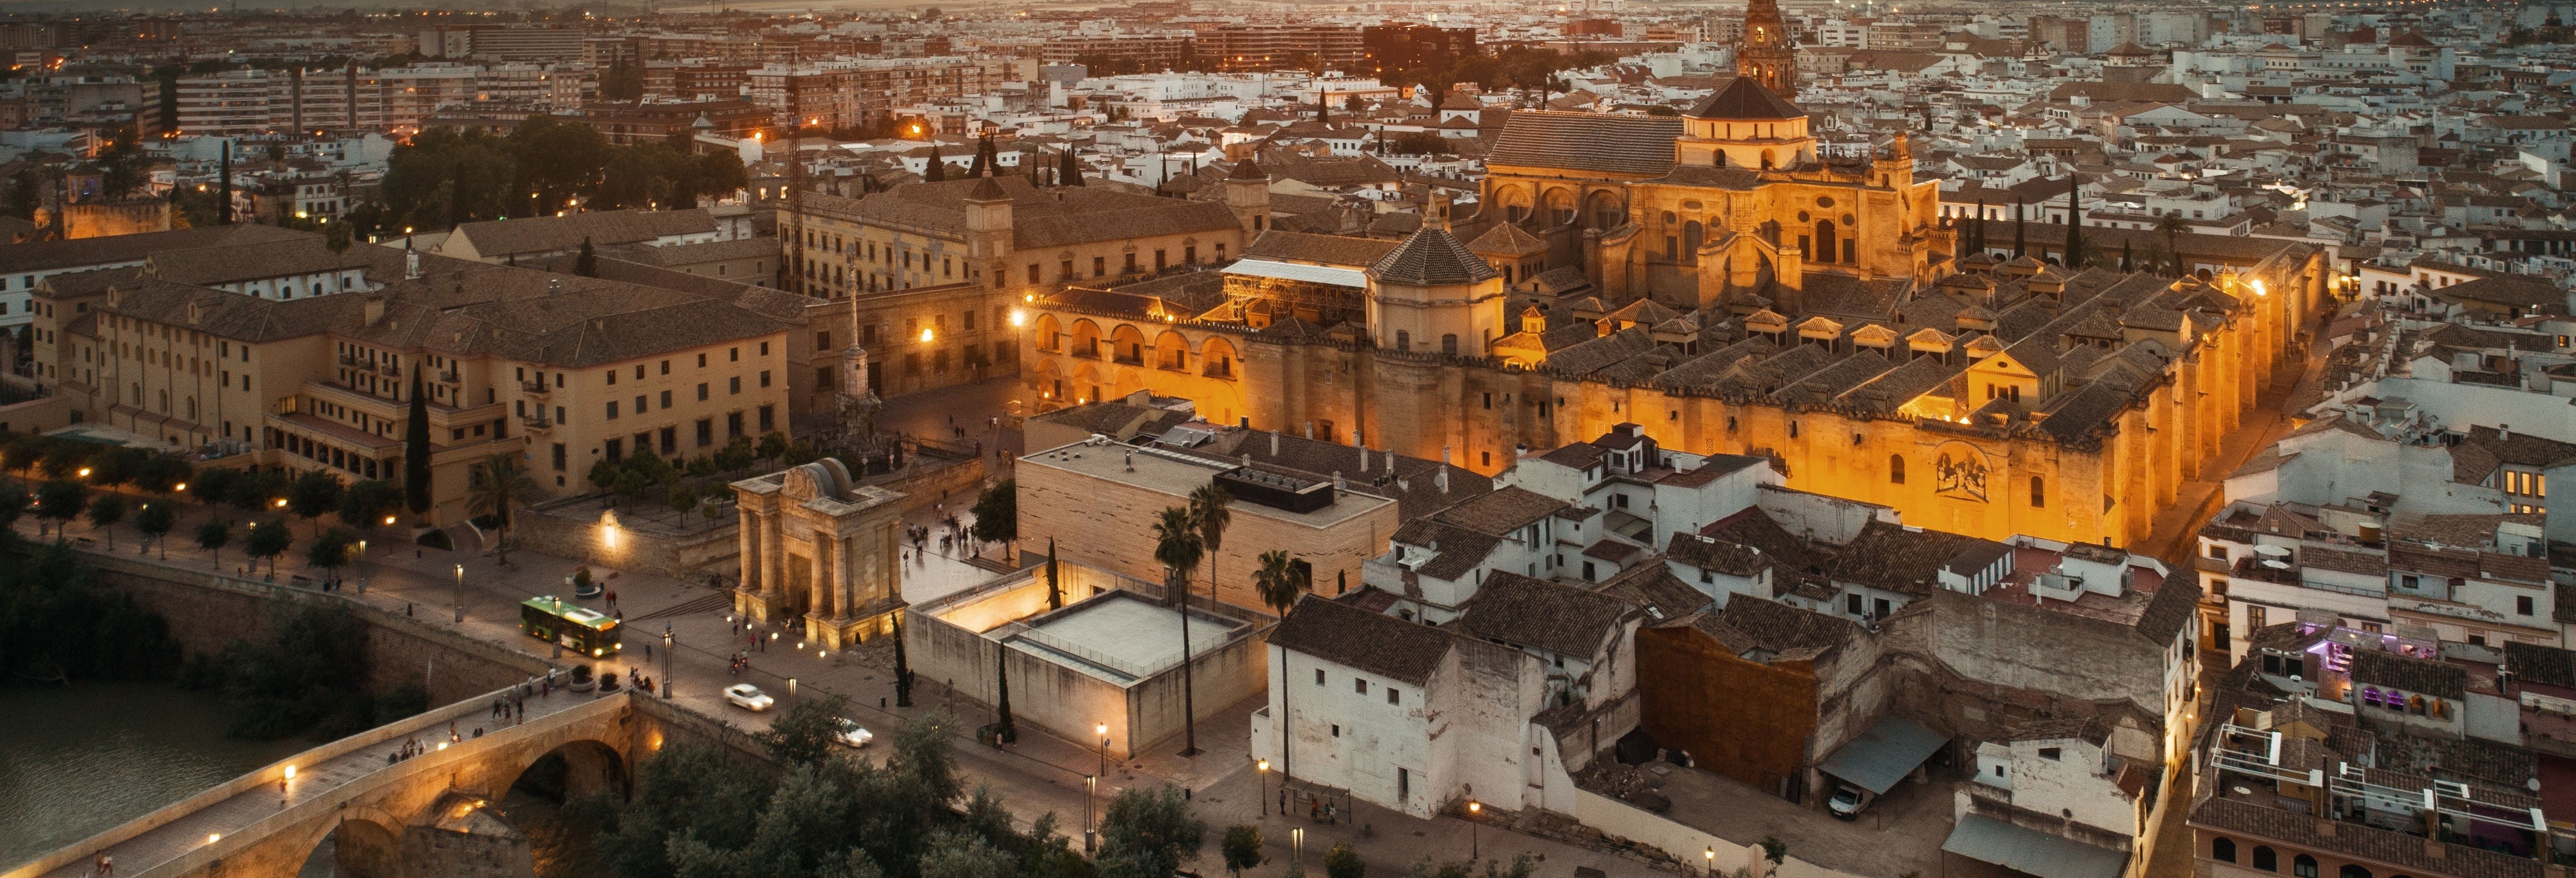 Excursión nocturna a Córdoba con visita a la Mezquita 